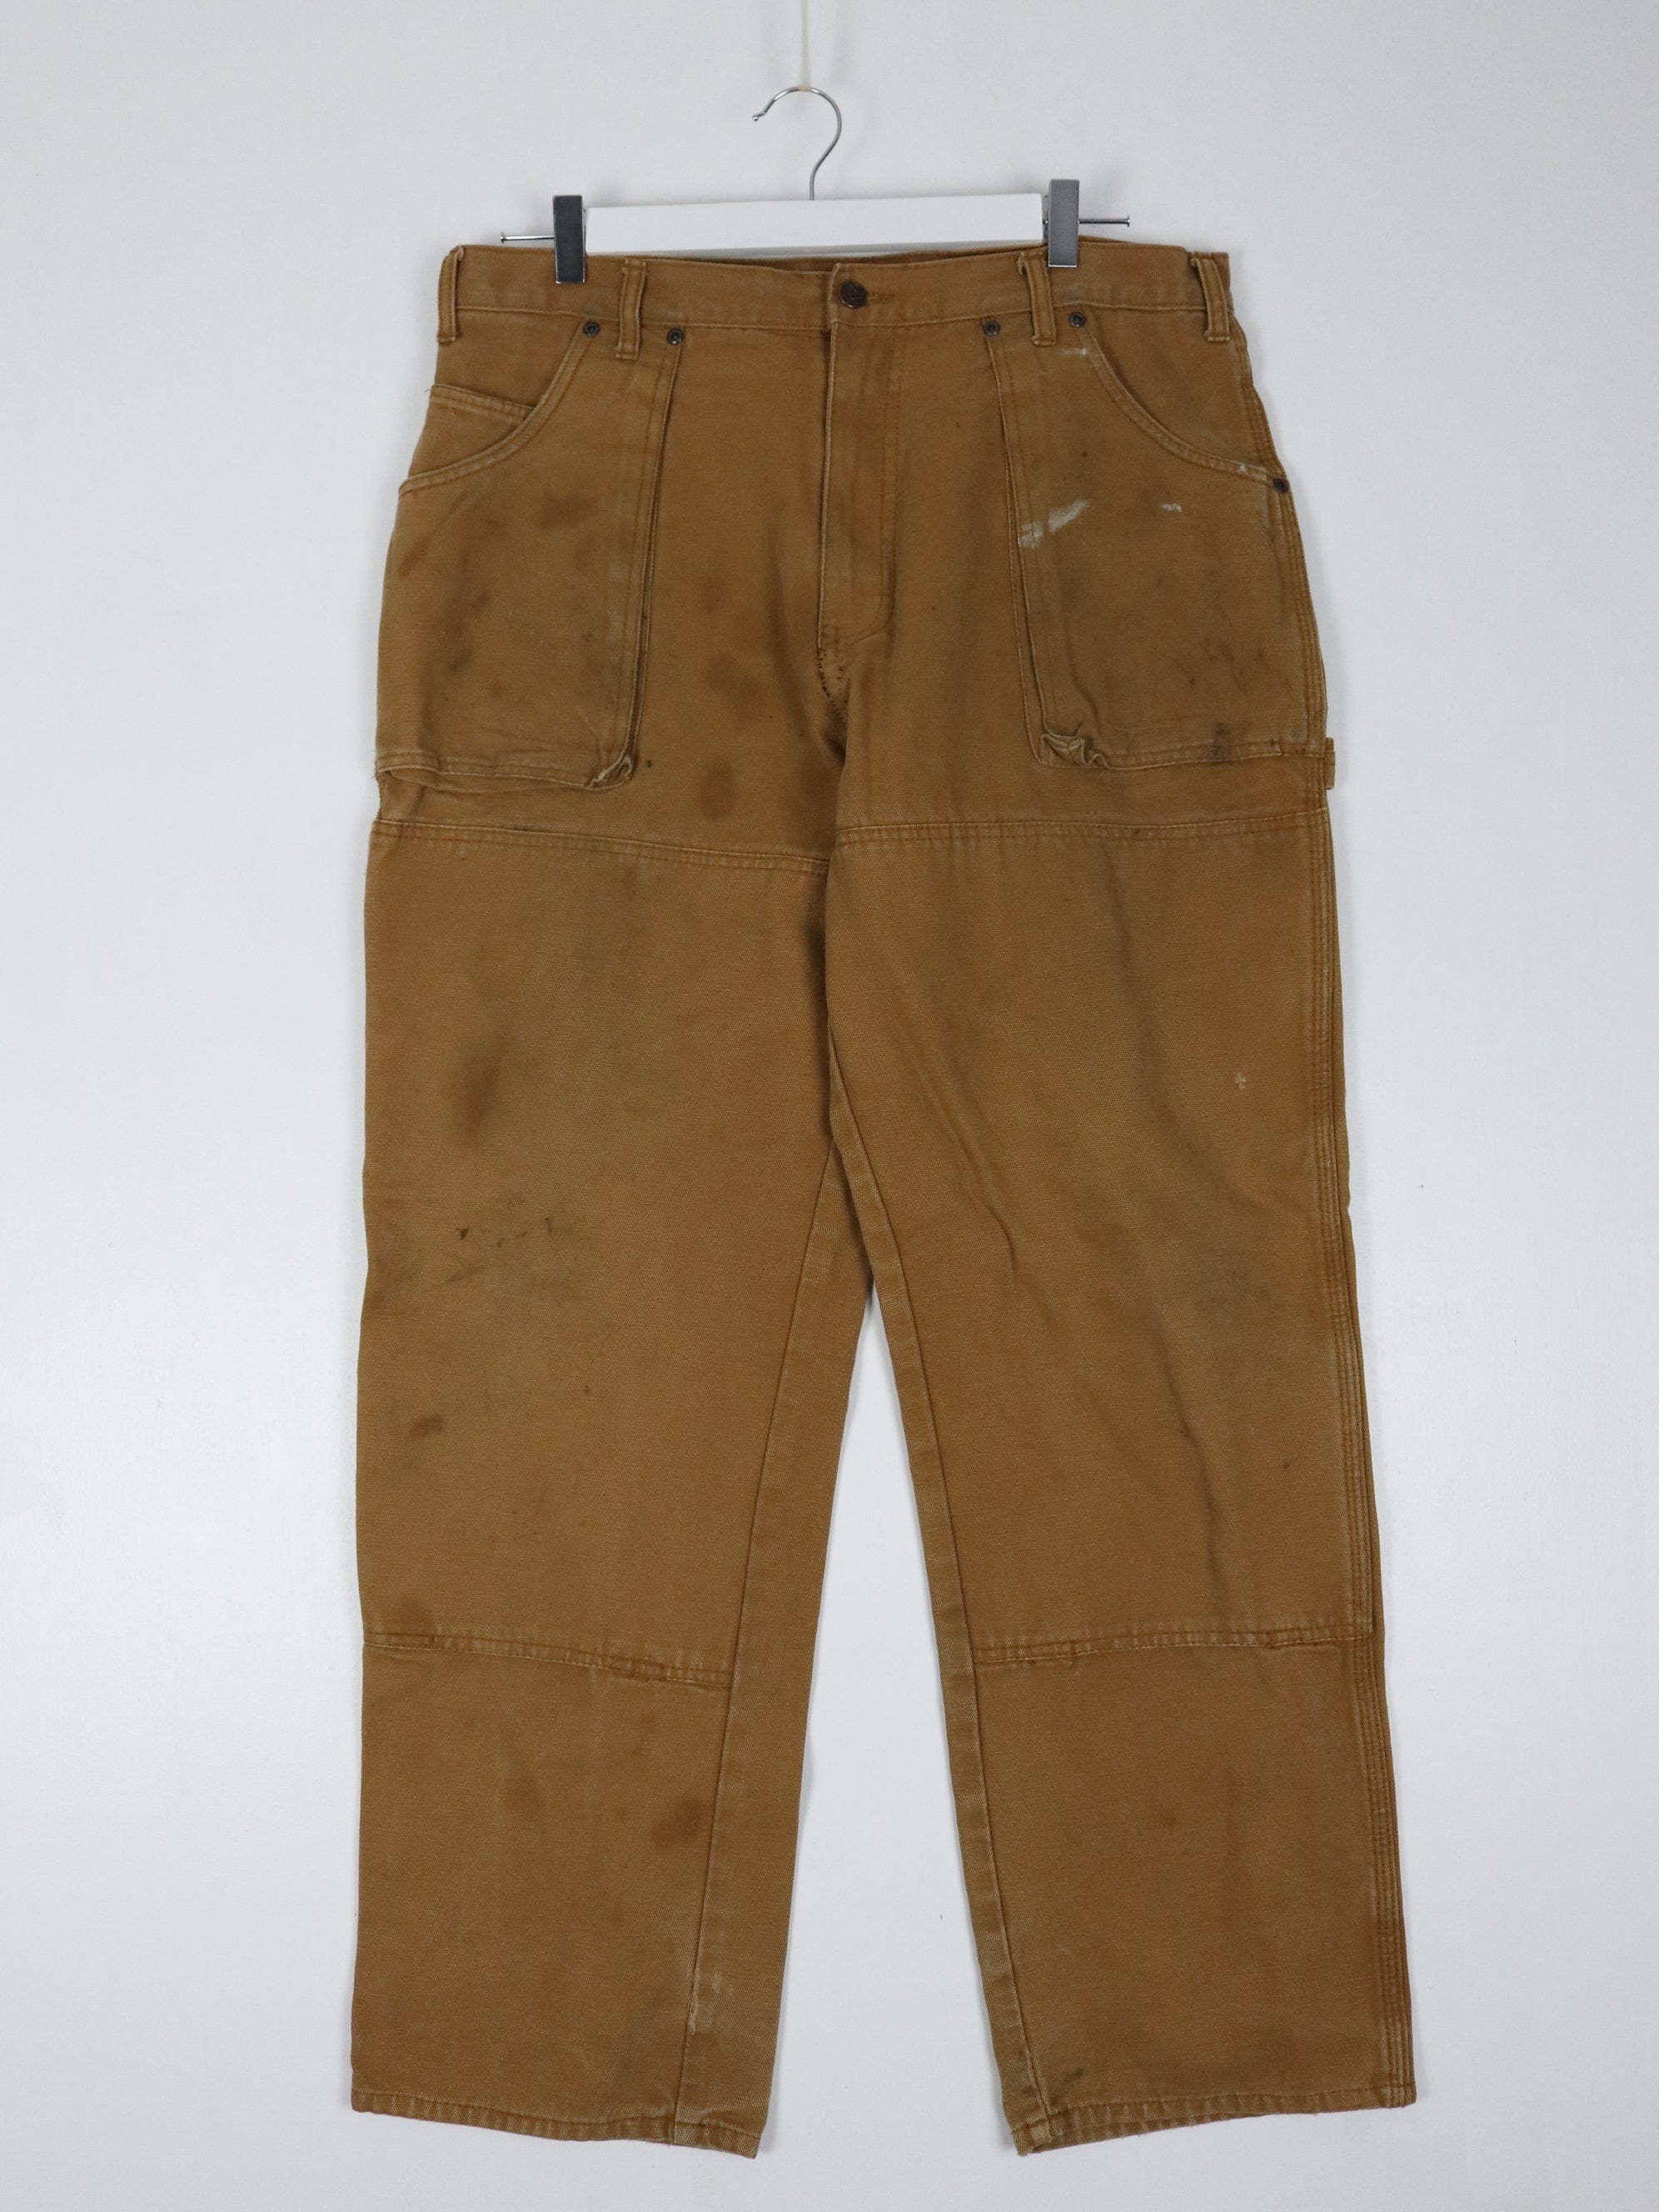 Dickies Pants Mens 36 x 30 Brown Double Knee Work Wear Carpenters